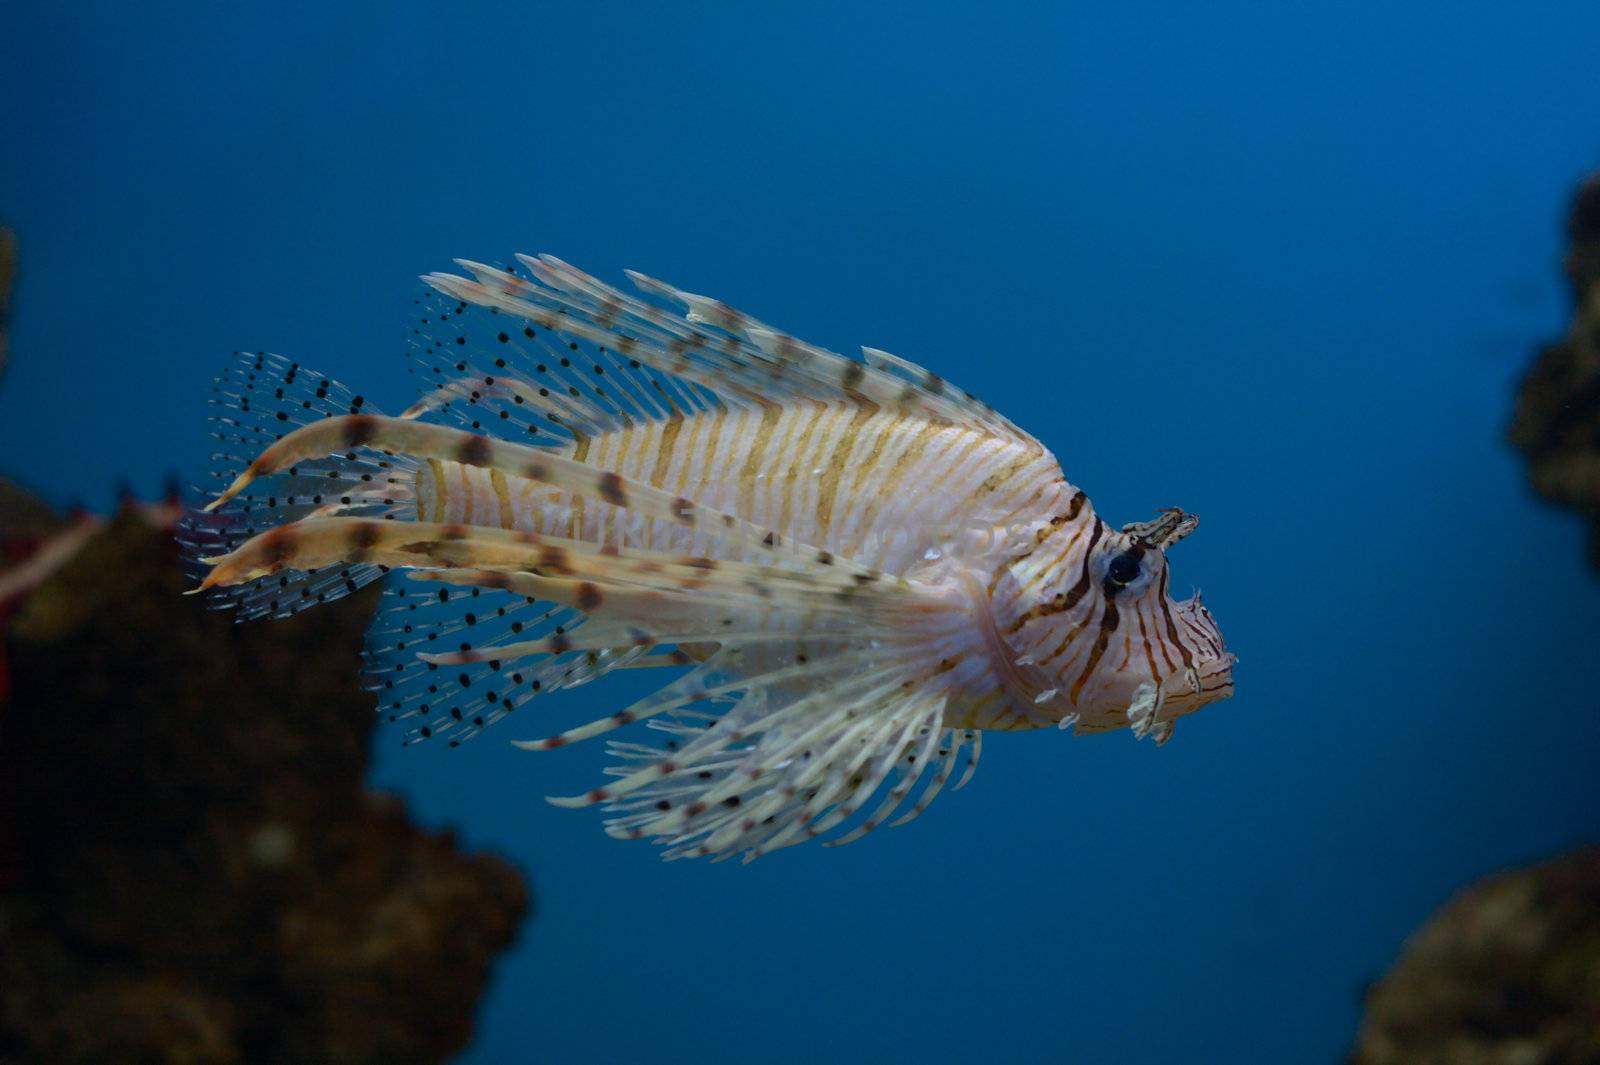 lionfish on blue background (close-up photo)